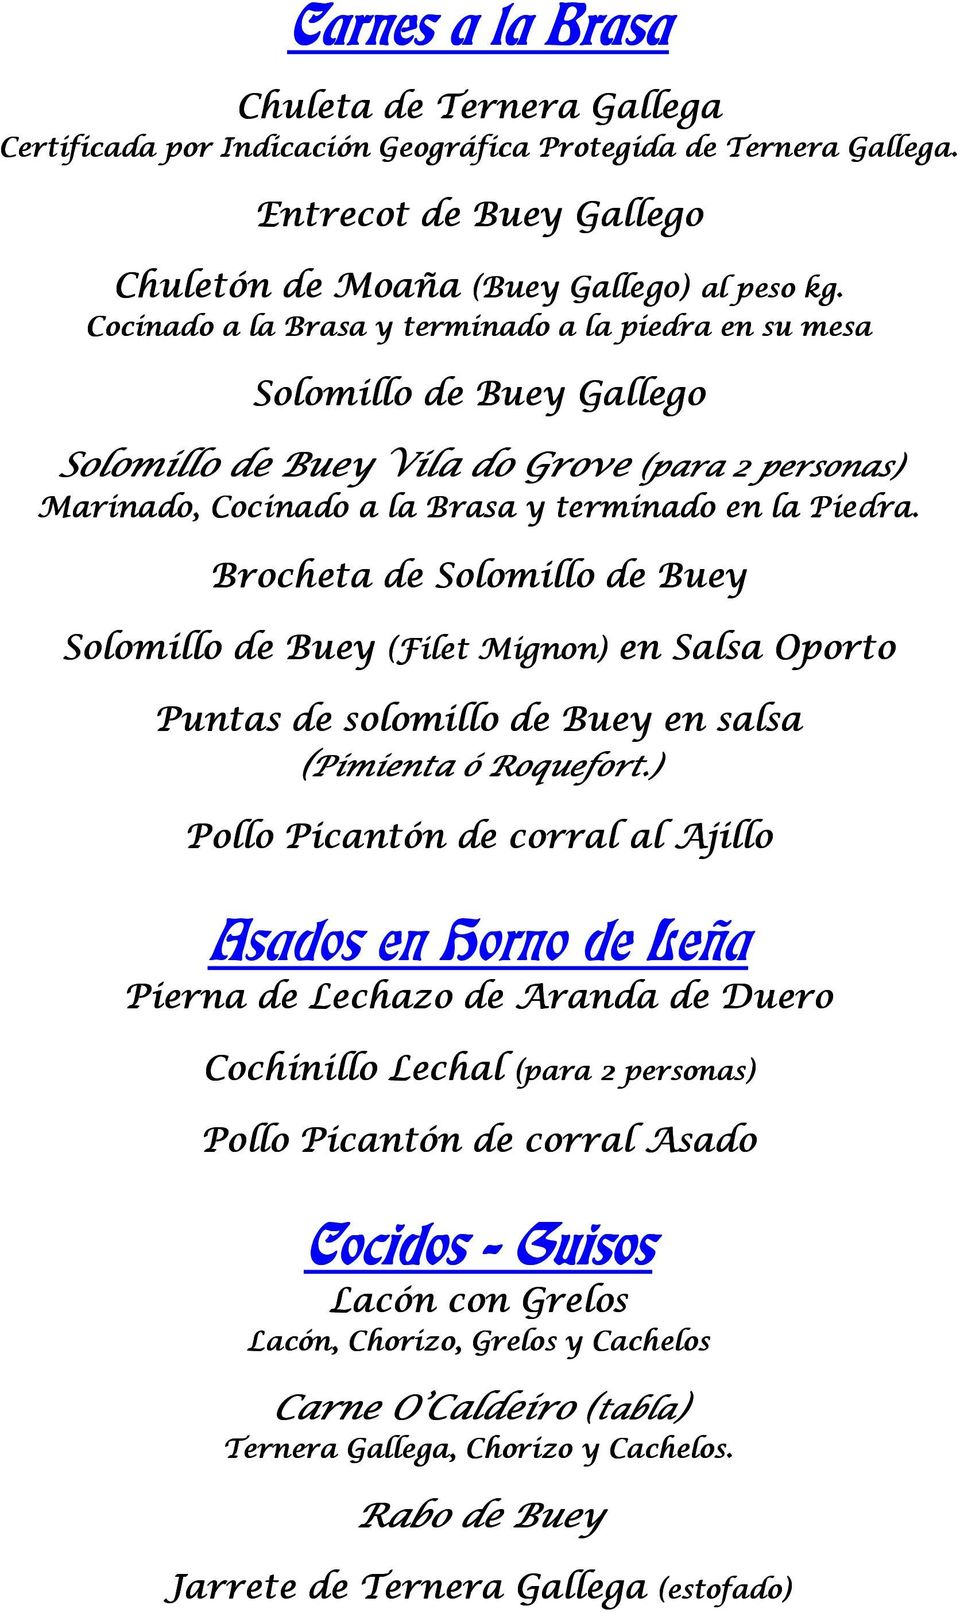 Brocheta de Solomillo de Buey Solomillo de Buey (Filet Mignon) en Salsa Oporto Puntas de solomillo de Buey en salsa (Pimienta ó Roquefort.